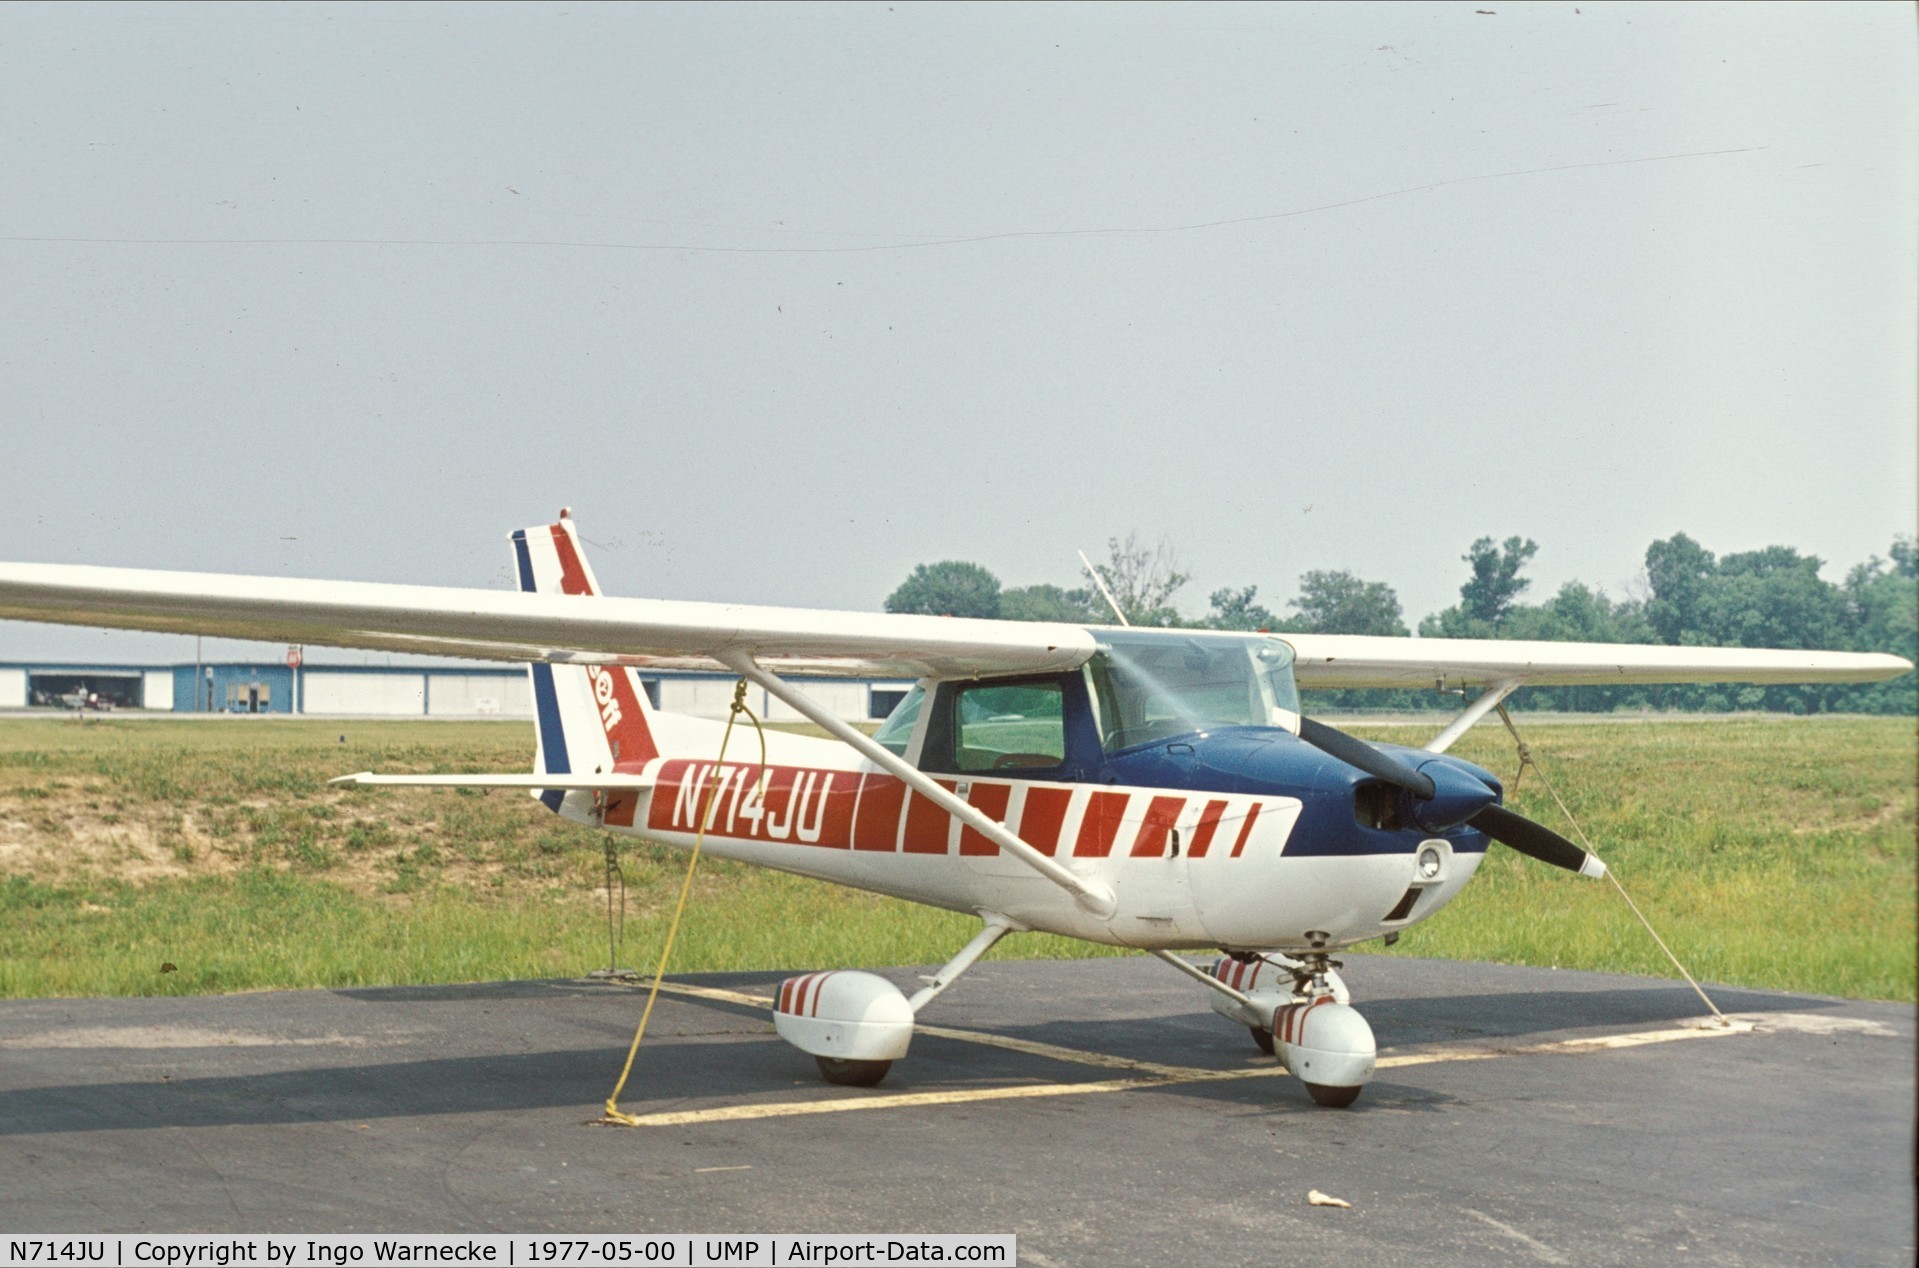 N714JU, 1977 Cessna 150M C/N 15079218, Cessna 150M at Indianapolis Metropolitan Airport